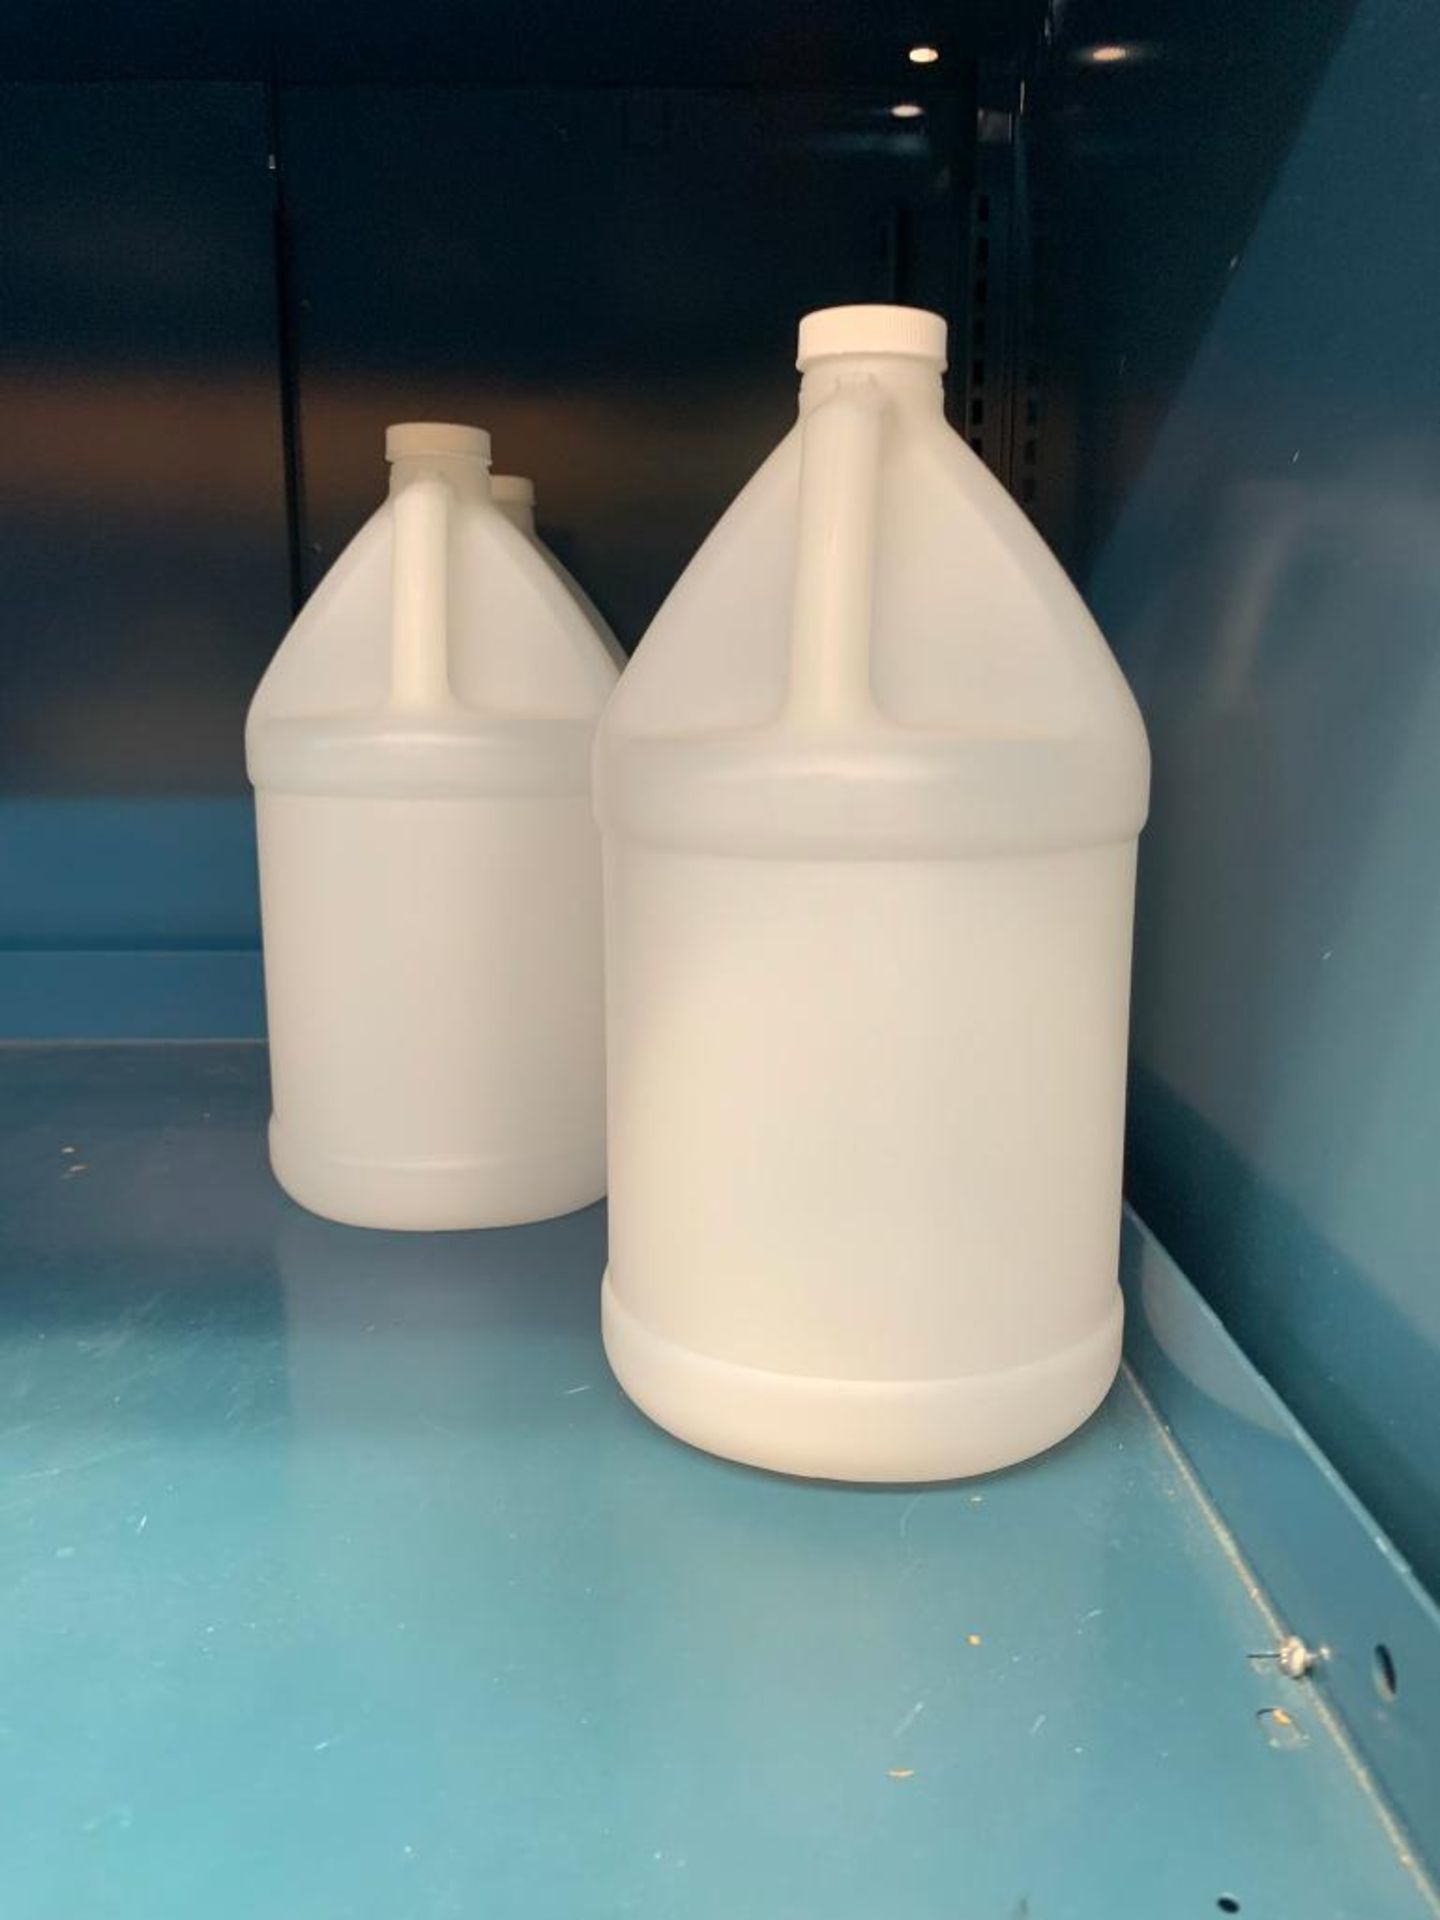 Vidmar 2-Shelf Unit w/ Bottles, Hydrogen Peroxide - Image 2 of 3